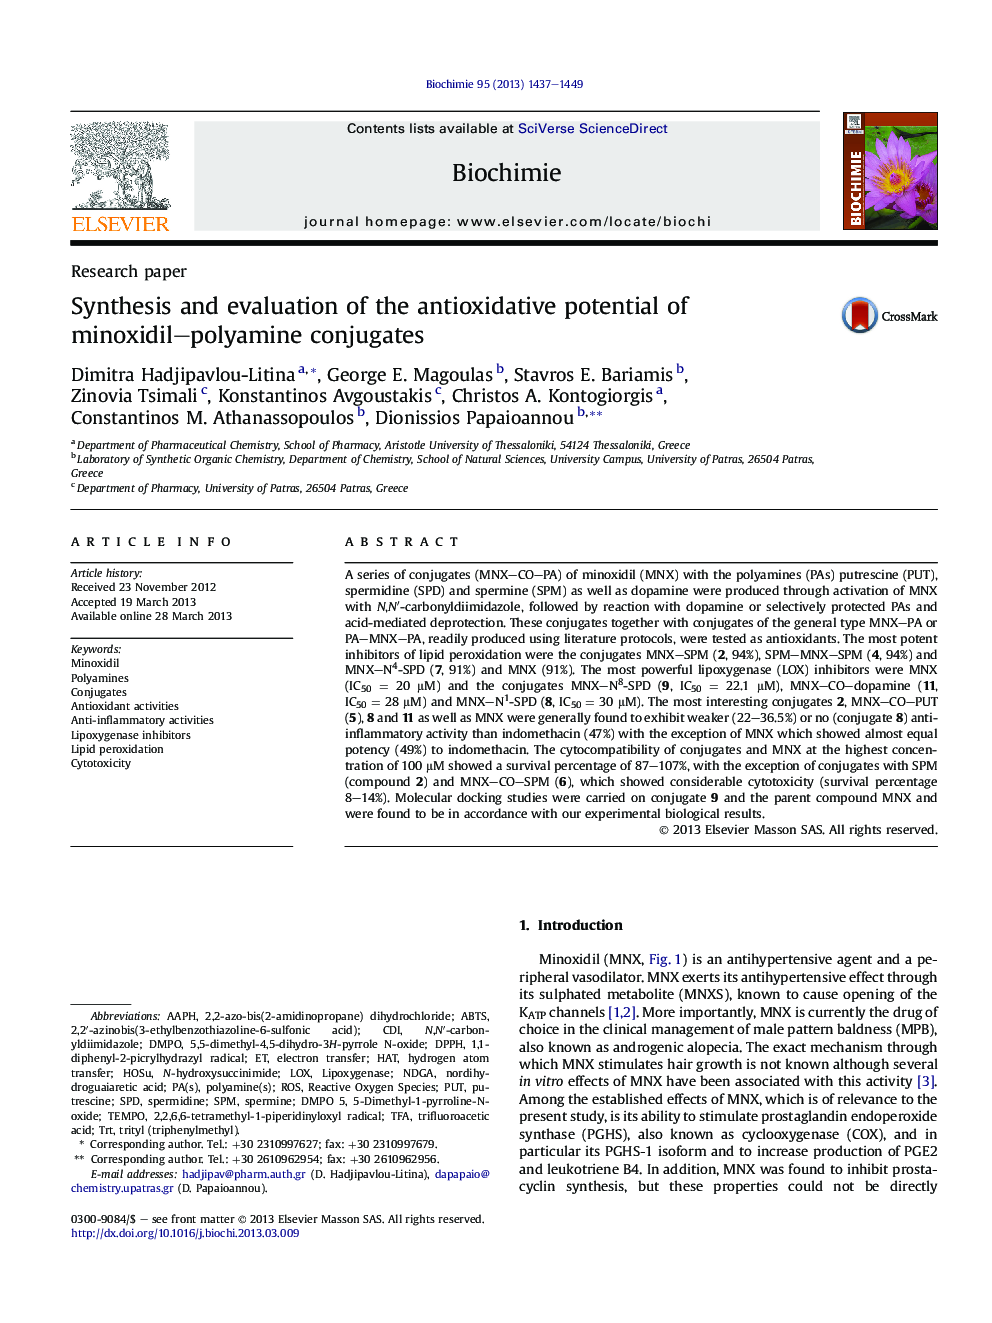 سنتز و ارزیابی پتانسیل آنتی اکسیدانی مونوکسیدیل-پلیامین کنژوگه 